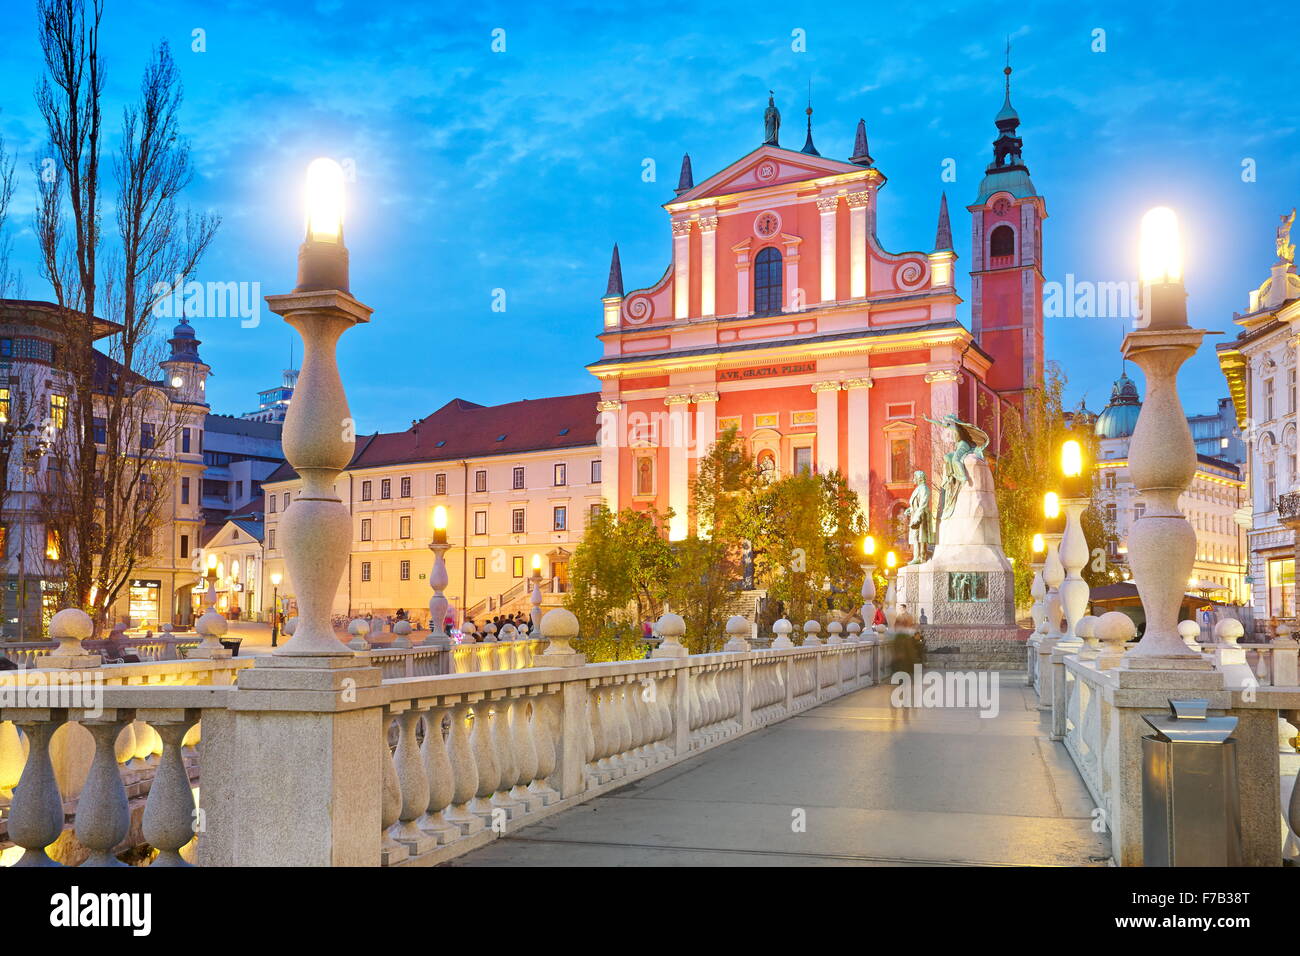 Liubliana, vista por la noche en la Iglesia de los franciscanos, Eslovenia Foto de stock